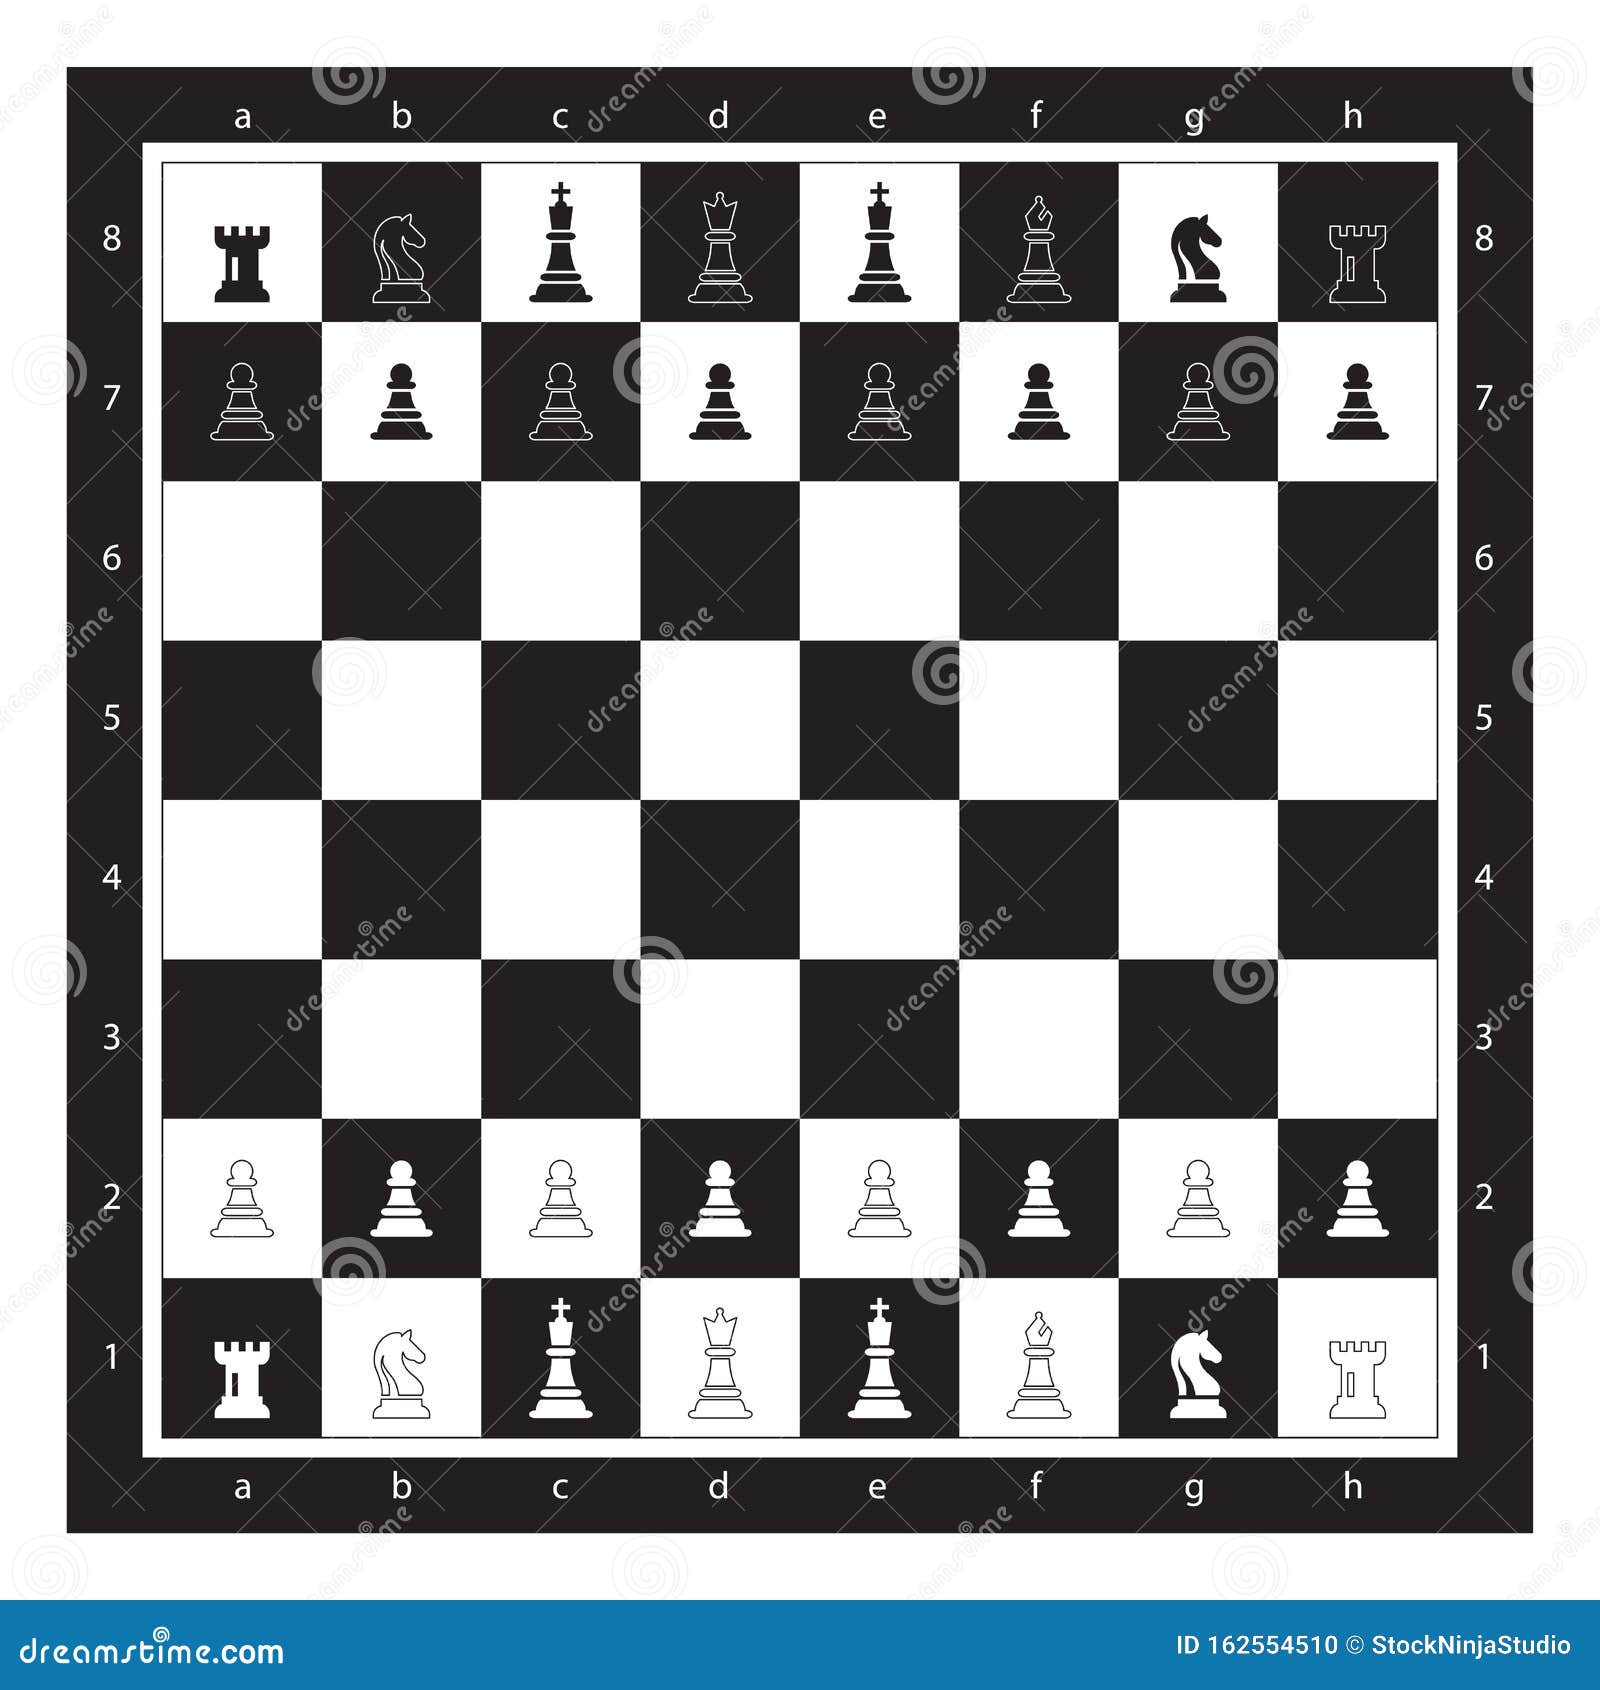 Como Ler Notação Algébrica de Xadrez: 7 Passos